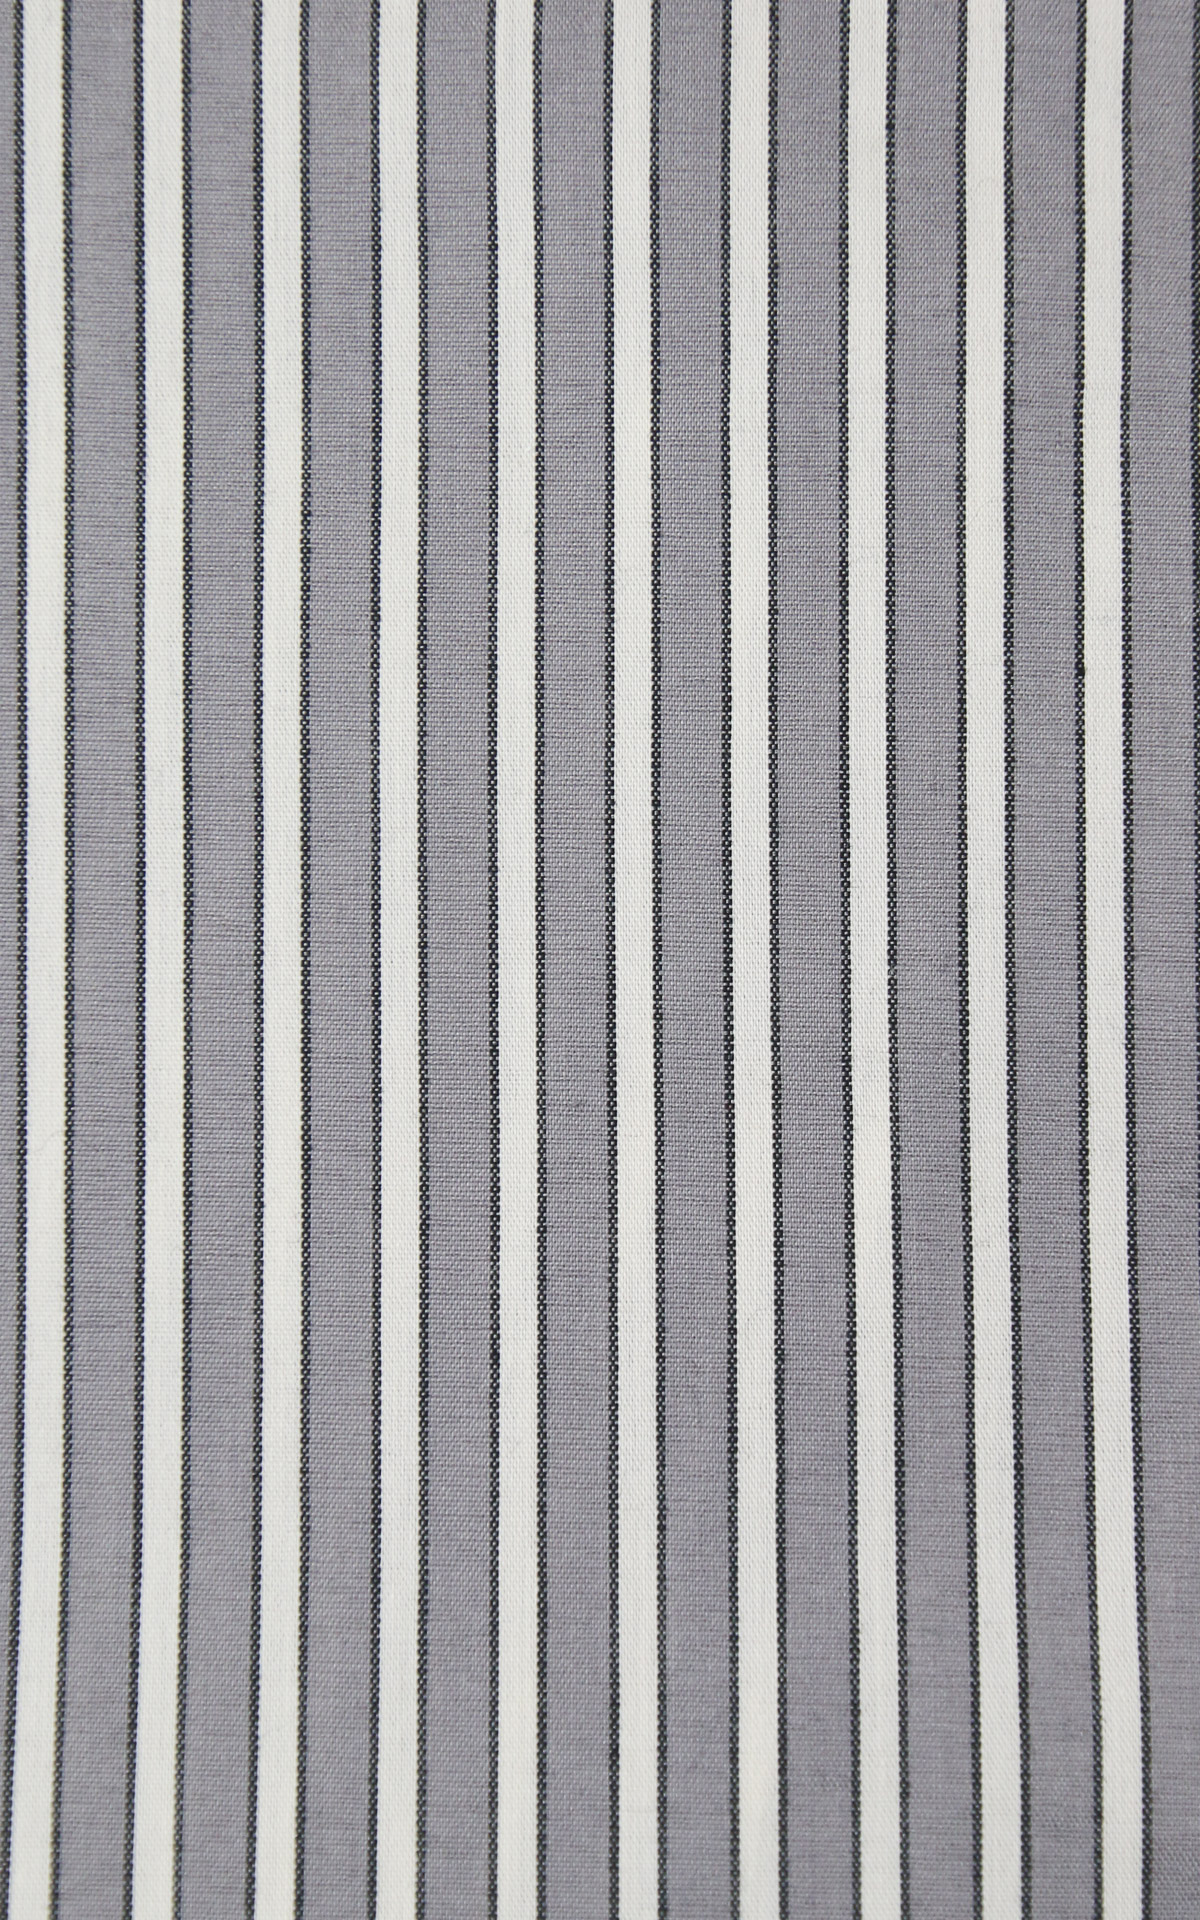 SusyMix - camicia righe - grigio/bianco/nero